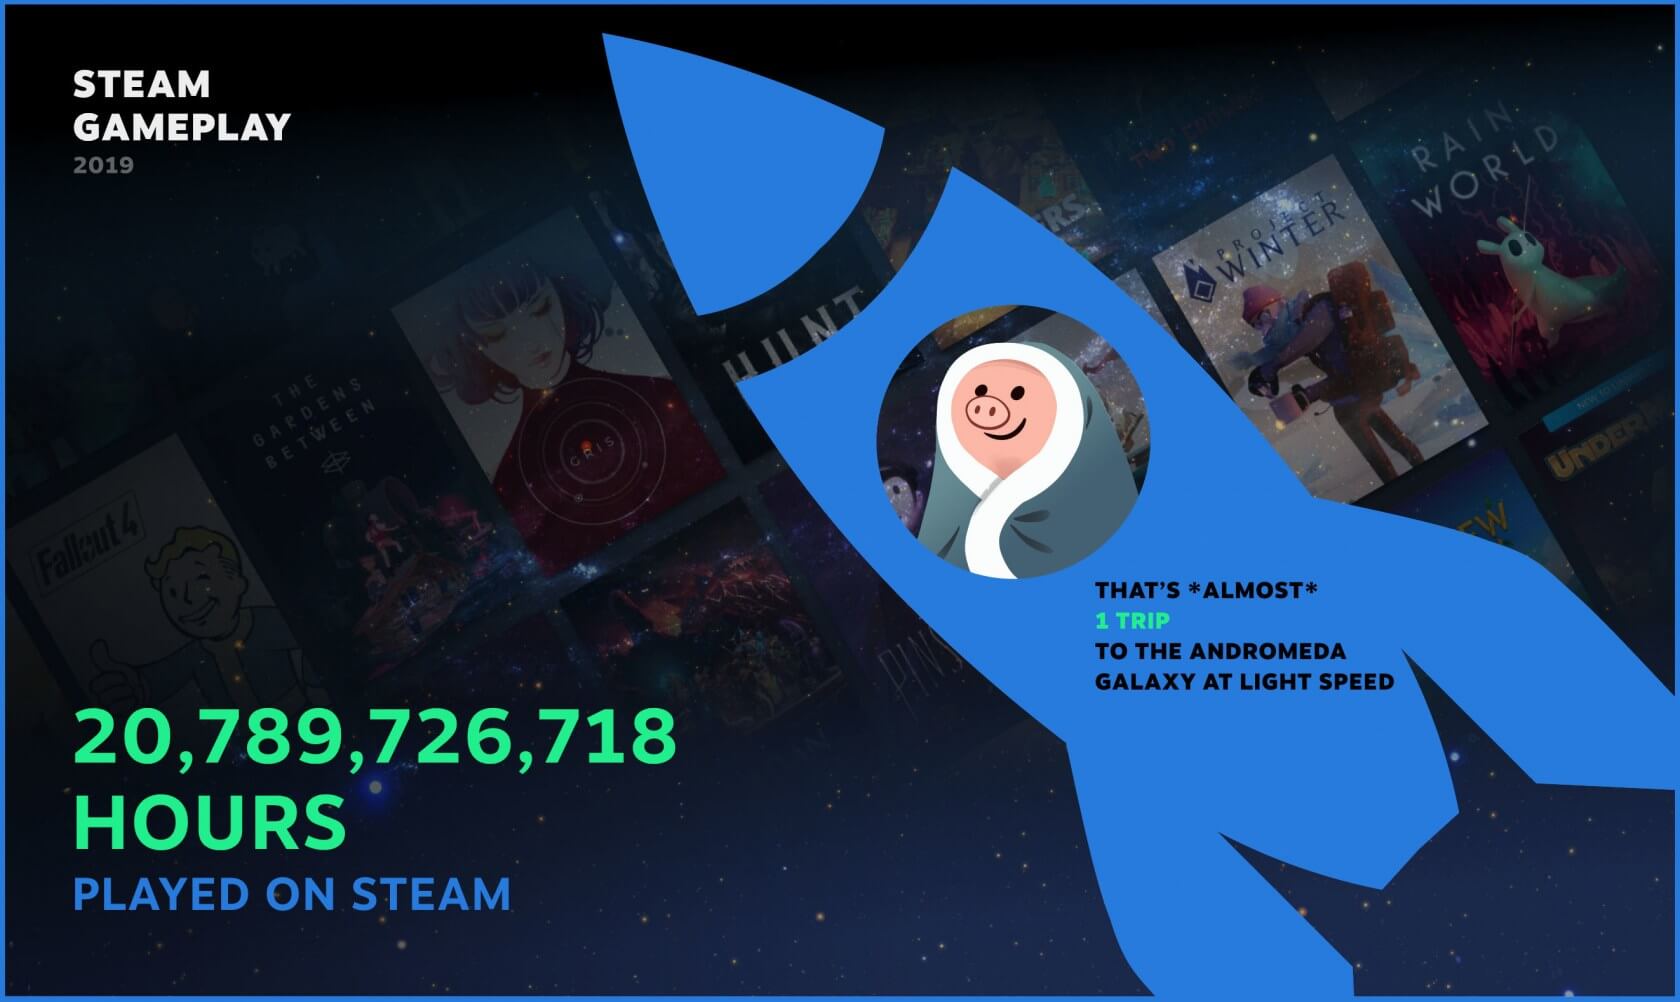 Usuários da Steam registraram mais de 20 bilhões de horas de jogo em 2019